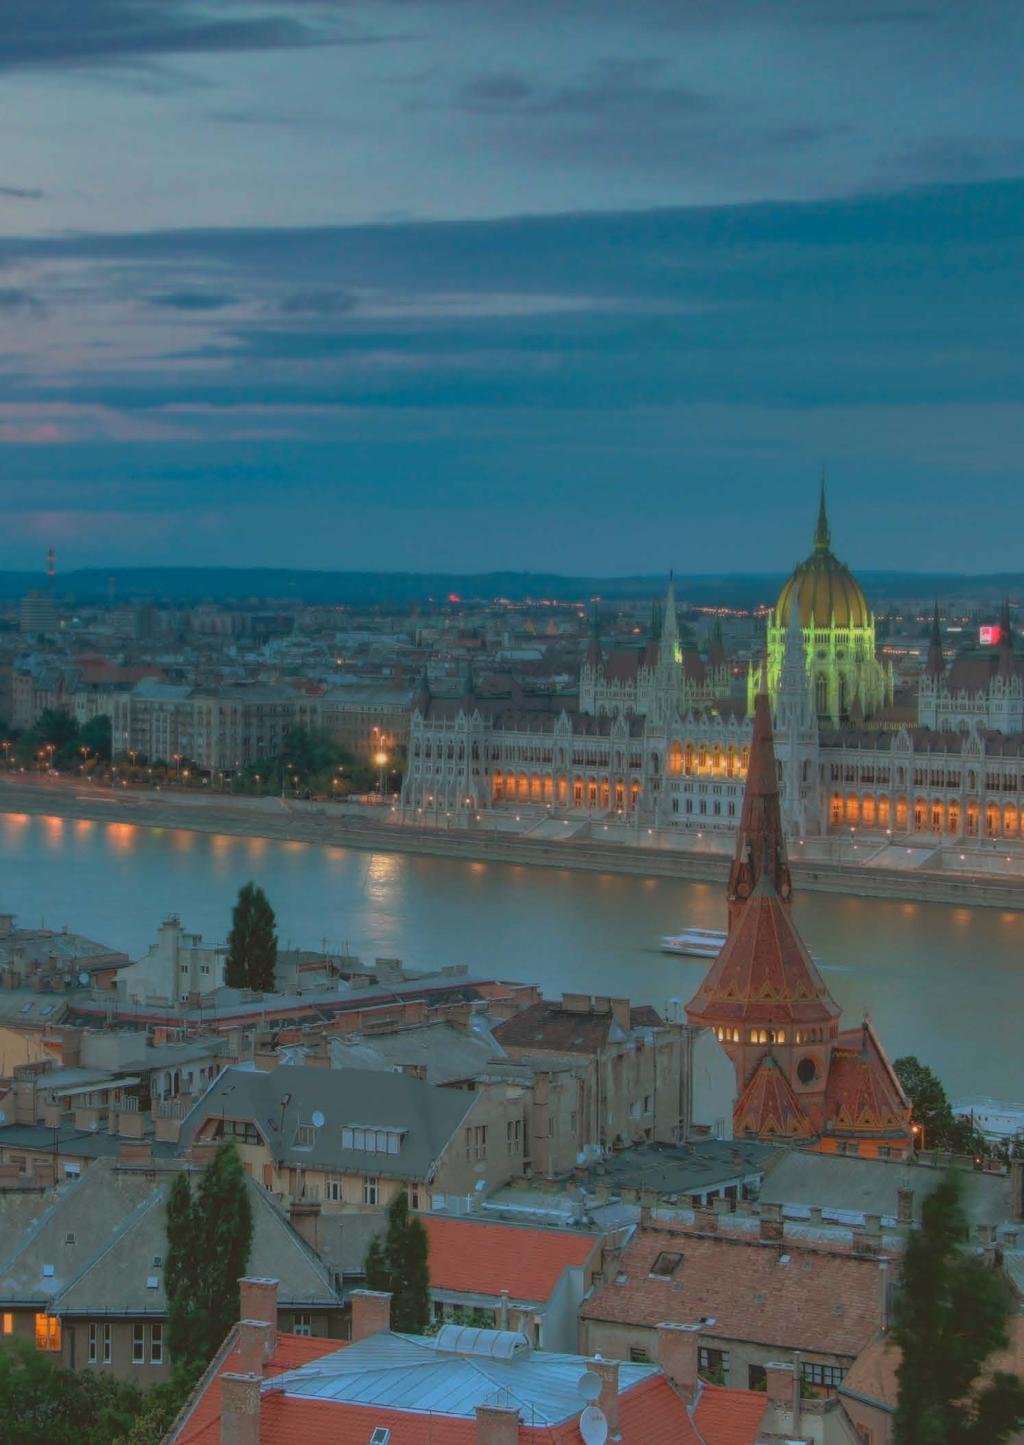 Tények és adatok 2013-ban az átlagos betétméret 1,2 millió forint volt Magyarországon.